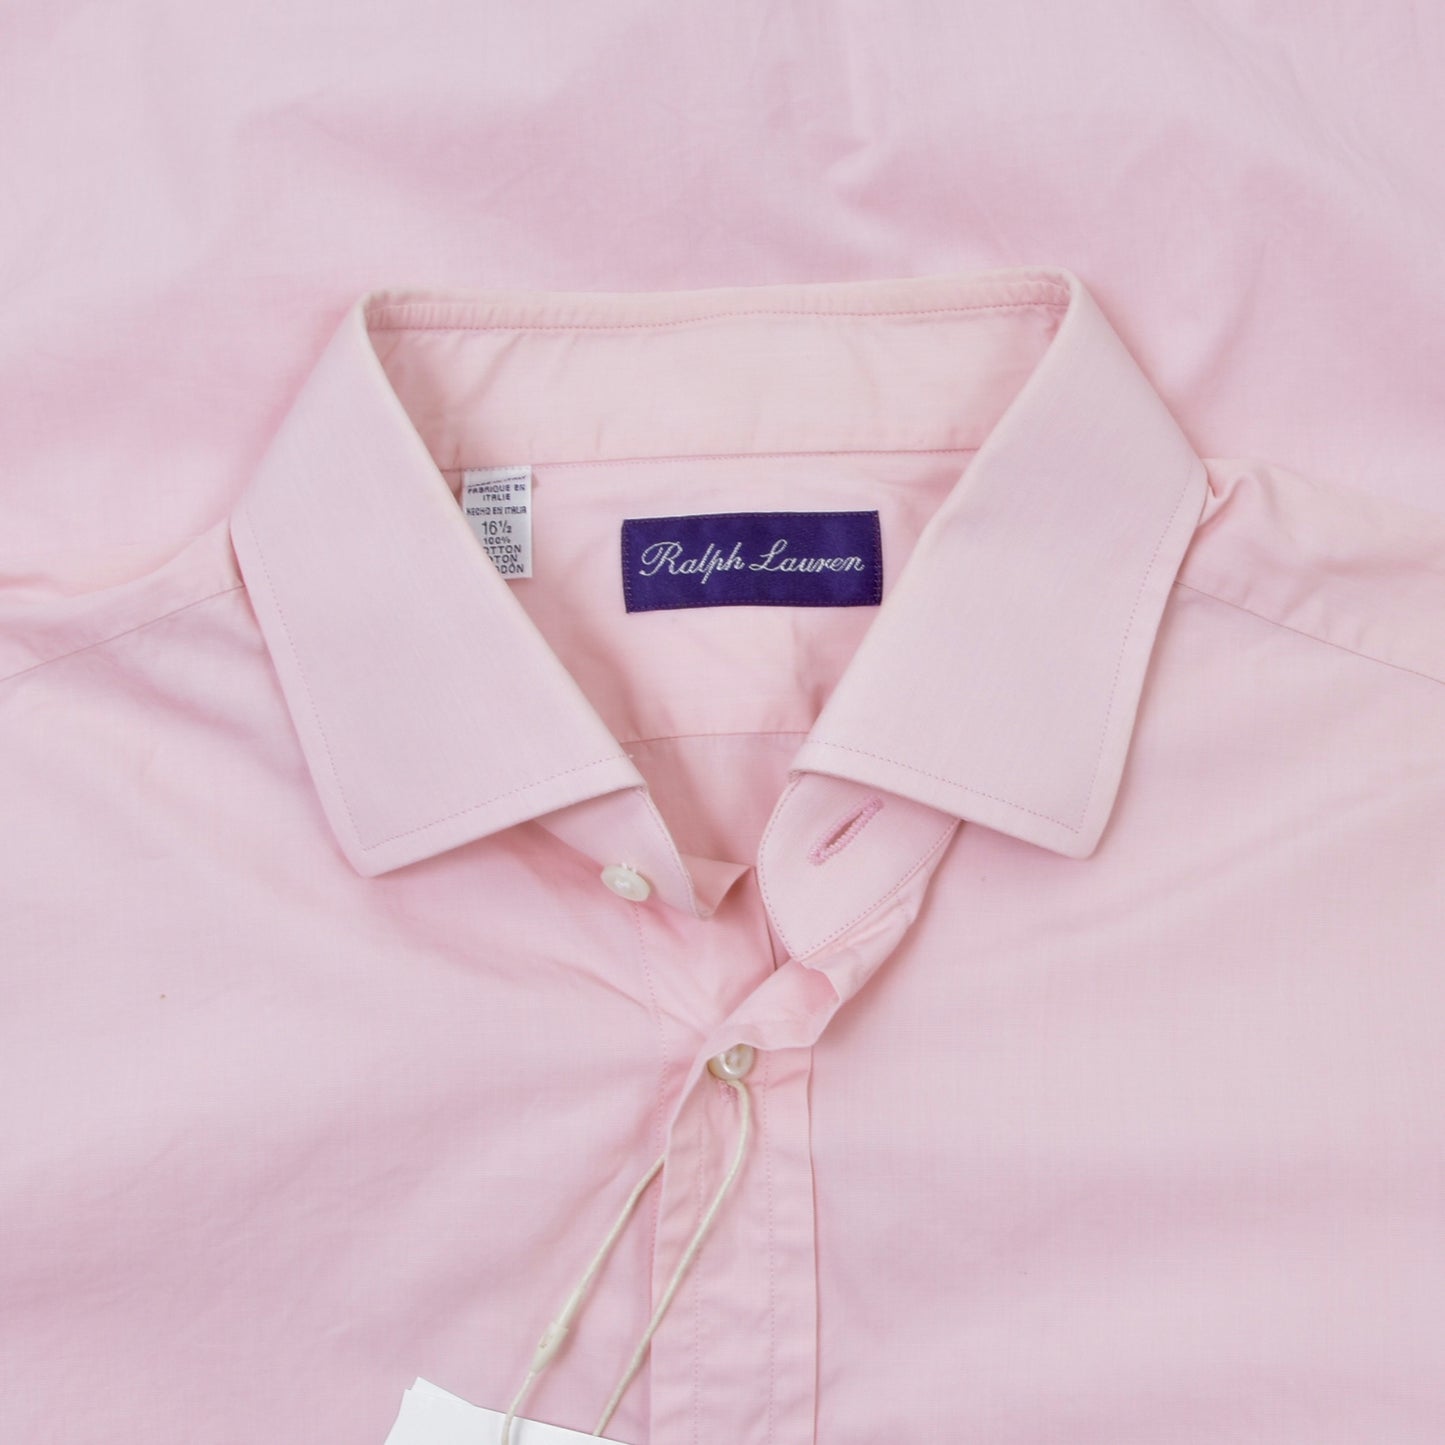 Ralph Lauren Purple Label Dress Shirt Shirt Size 16 1/2 - Pink